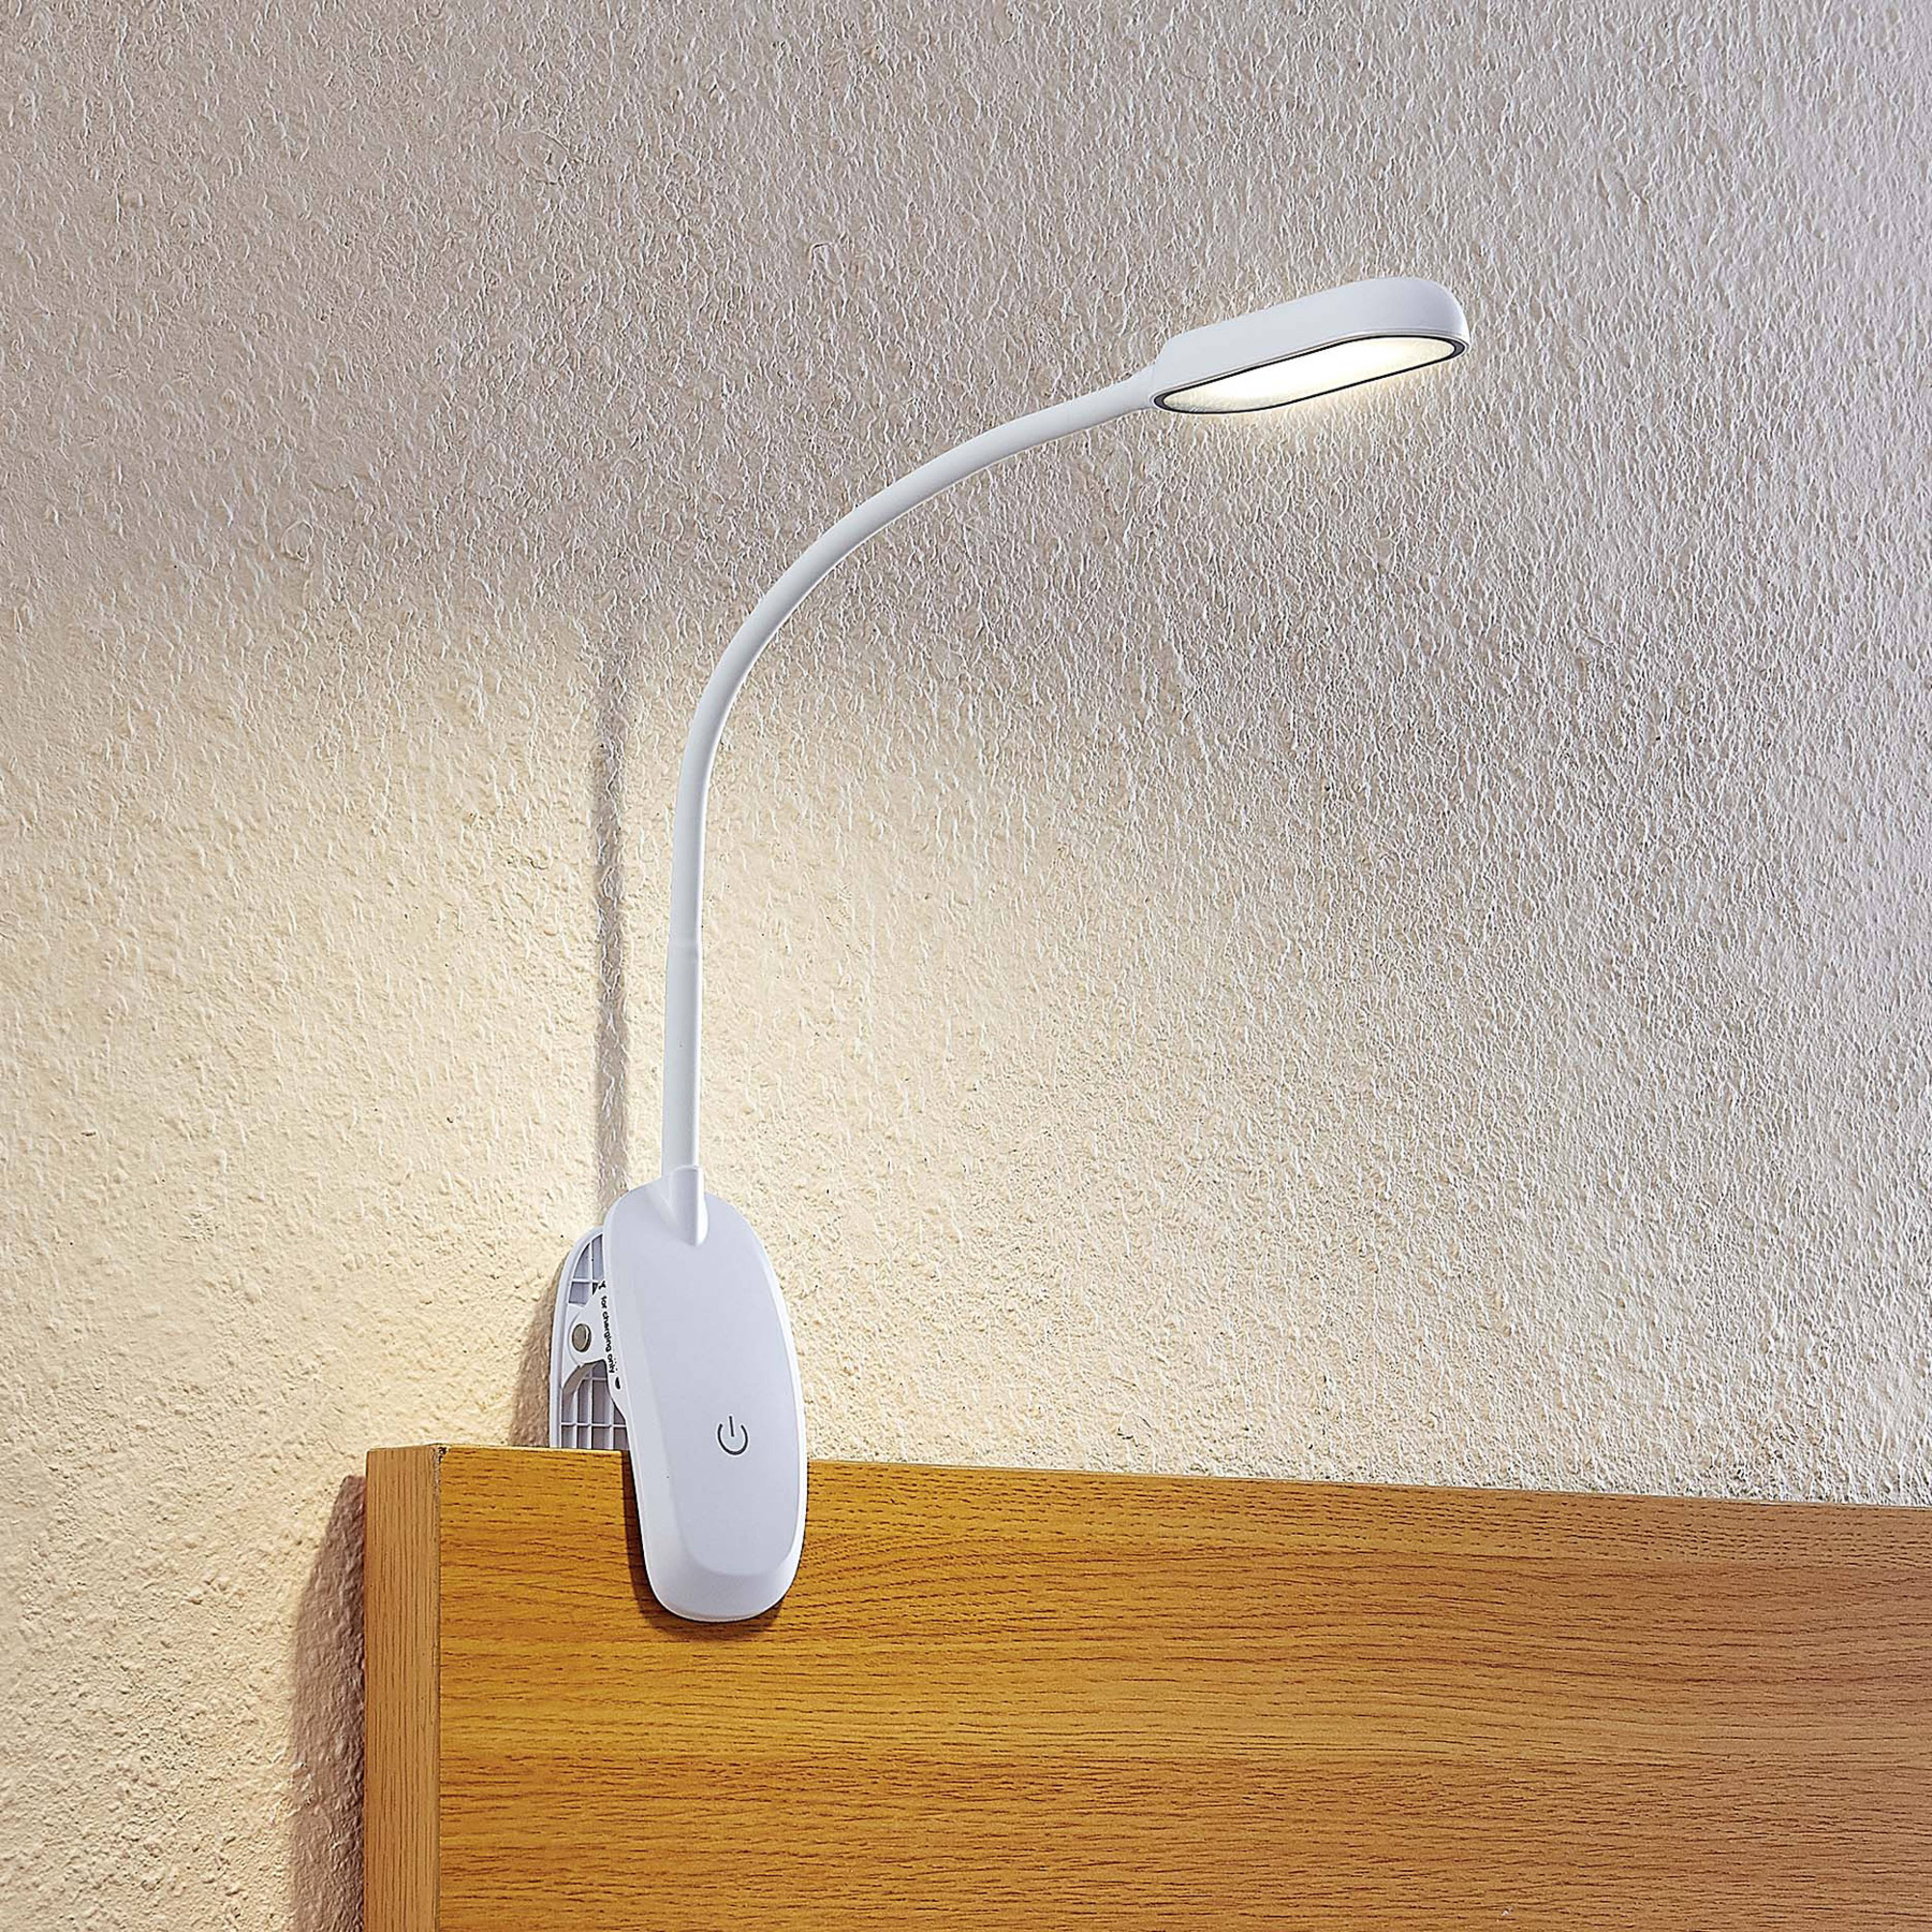 Prios LED clamp light Najari, branco, bateria recarregável, USB, 51 cm de